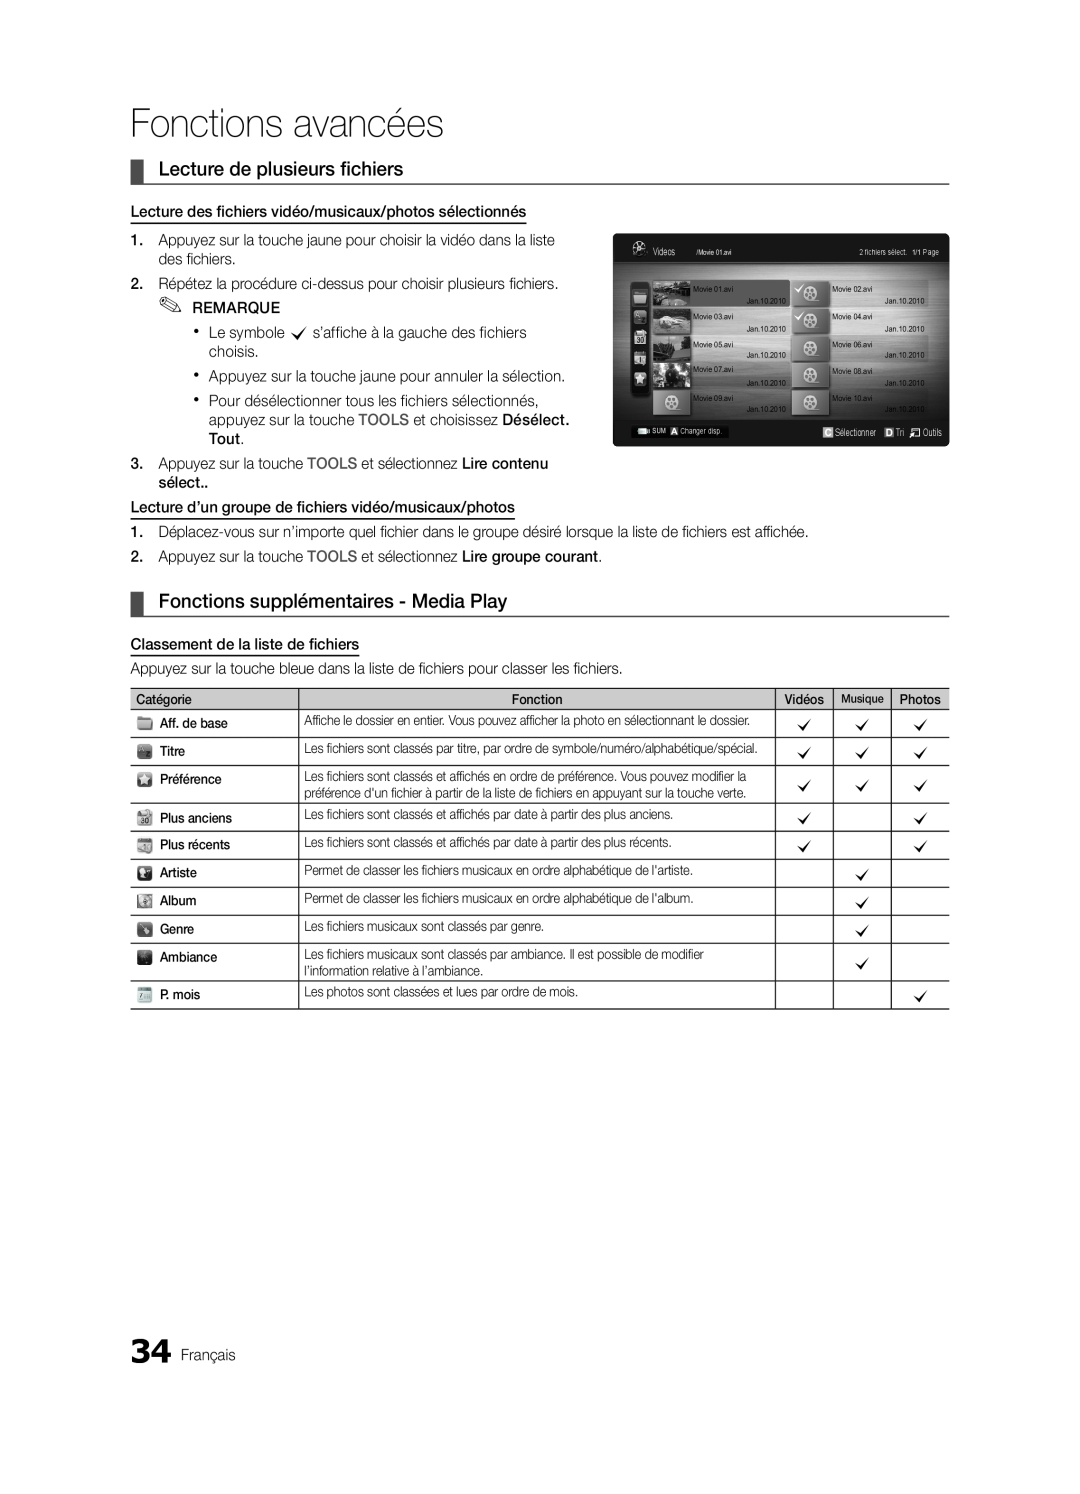 Samsung LN32C550 user manual Lecture de plusieurs fichiers, Fonctions supplémentaires - Media Play, des fichiers, Tout 